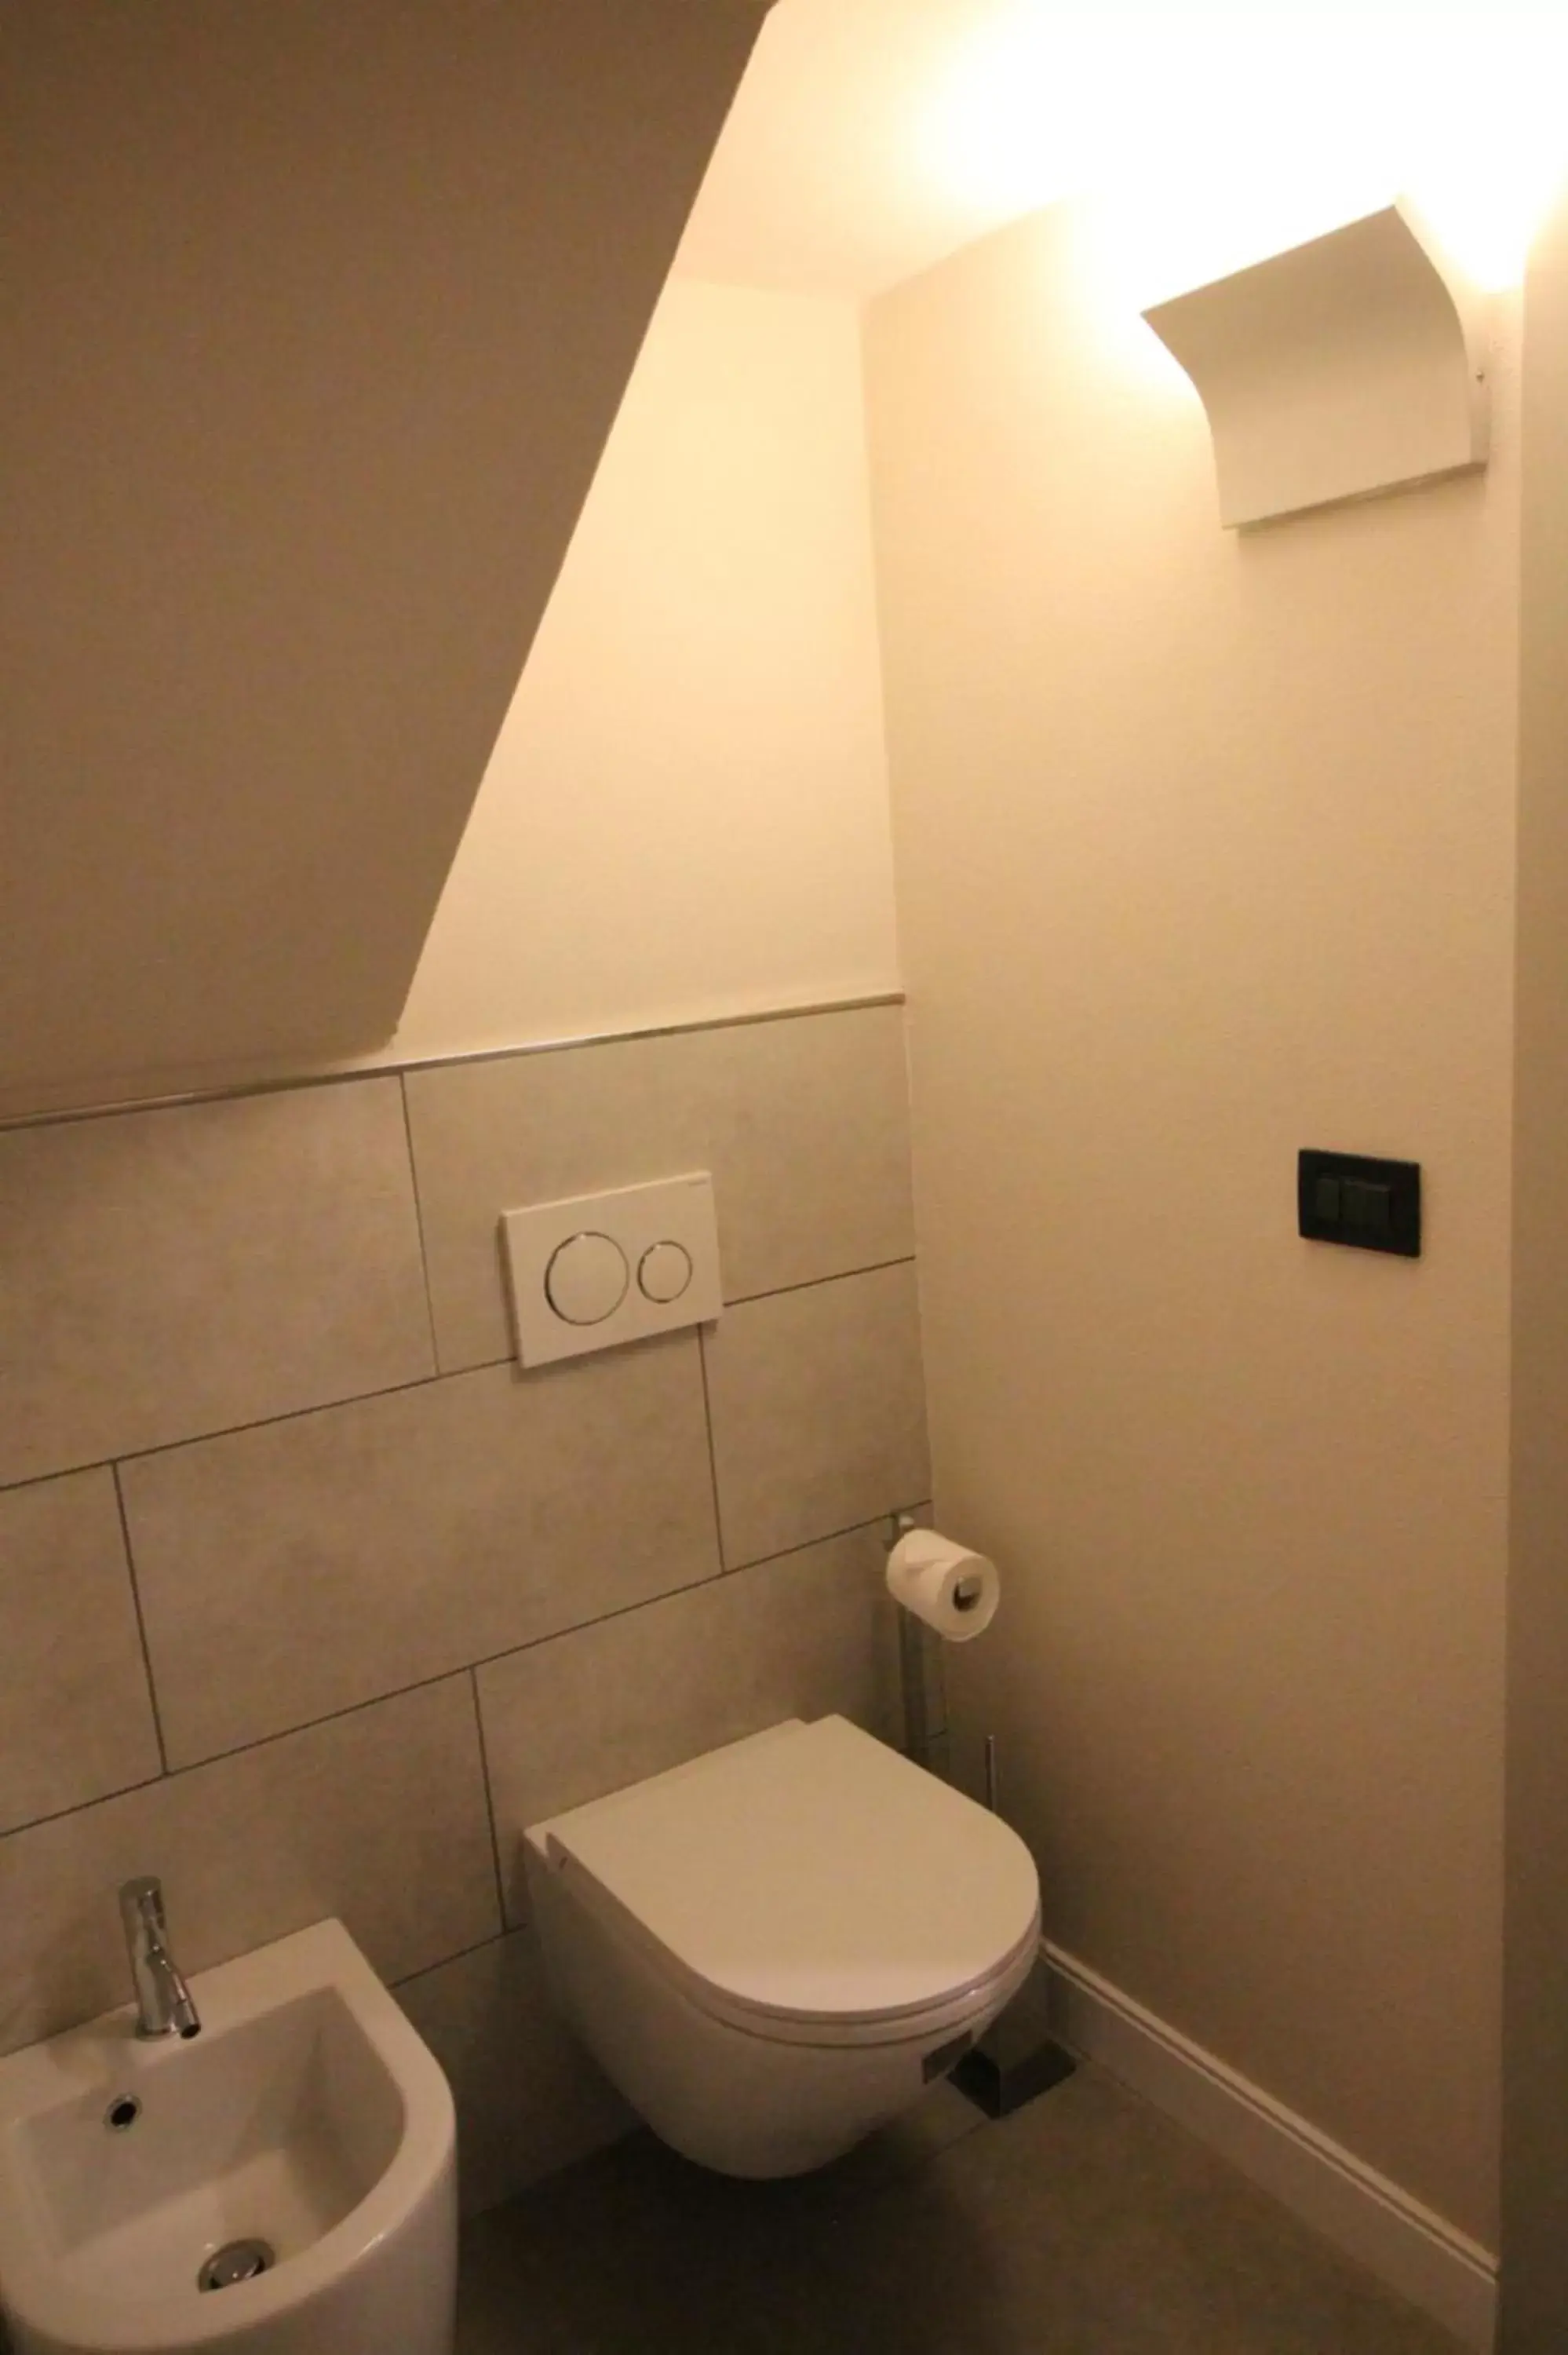 Bathroom in Badia Fiorentina